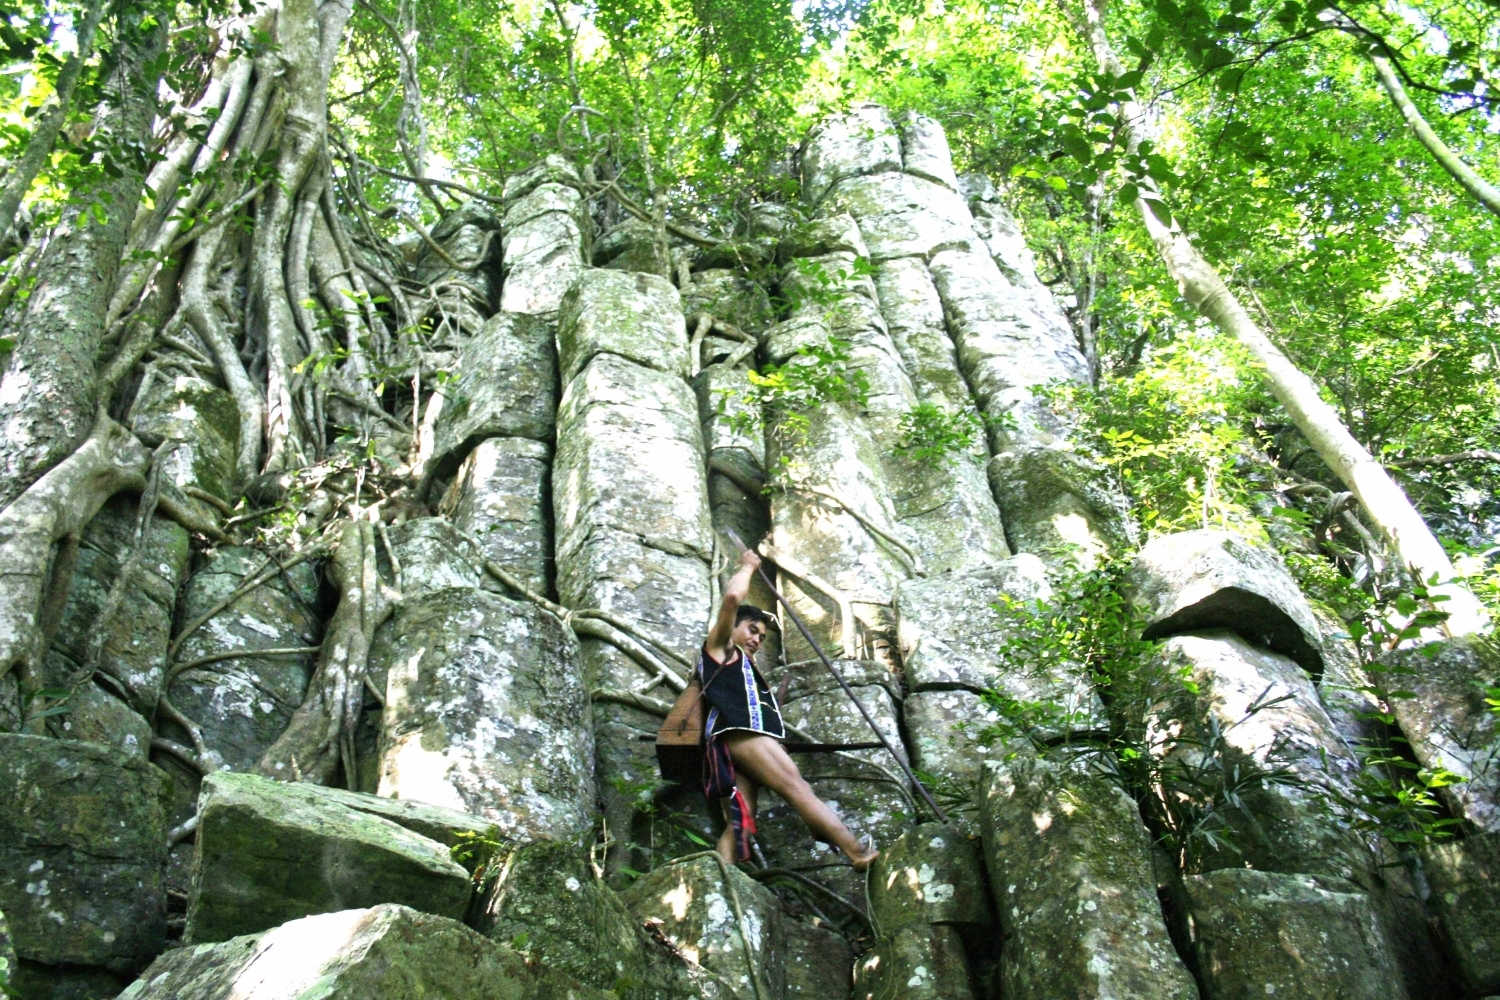 Thành đá cổ Tà Kơn cũng là một điểm thu hút khách du lịch đến khám phá